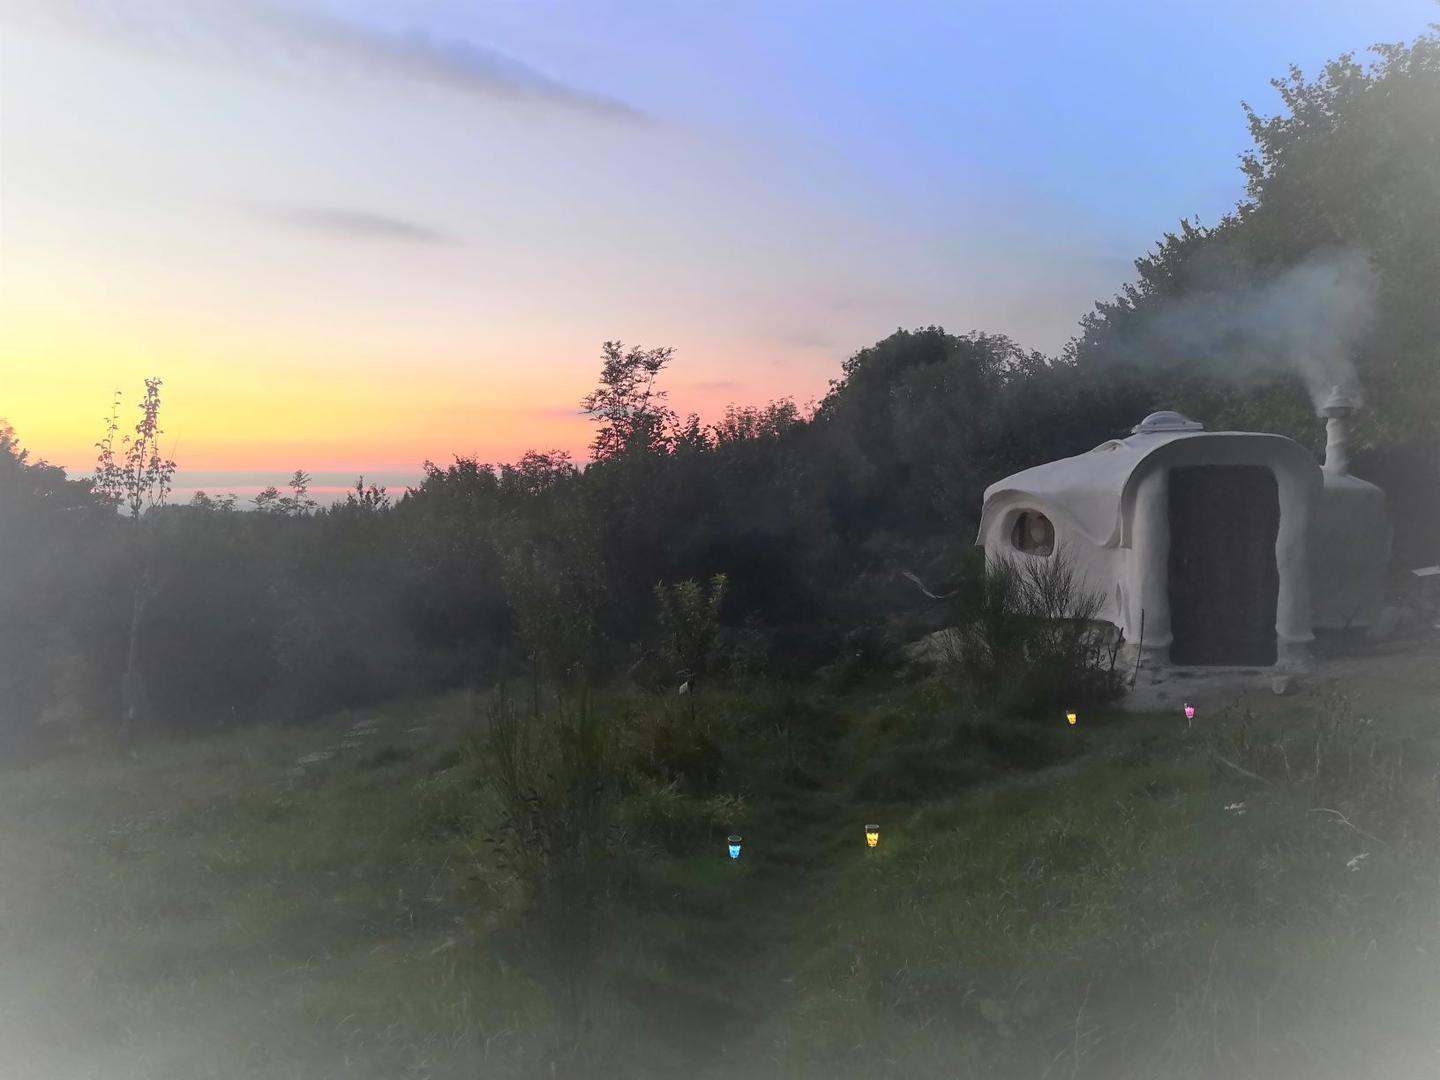 Hôte GreenGo: Les loges de la nature - Nuits en Kerterre pour vivre confortablement la simplicité en pleine nature - Image 3